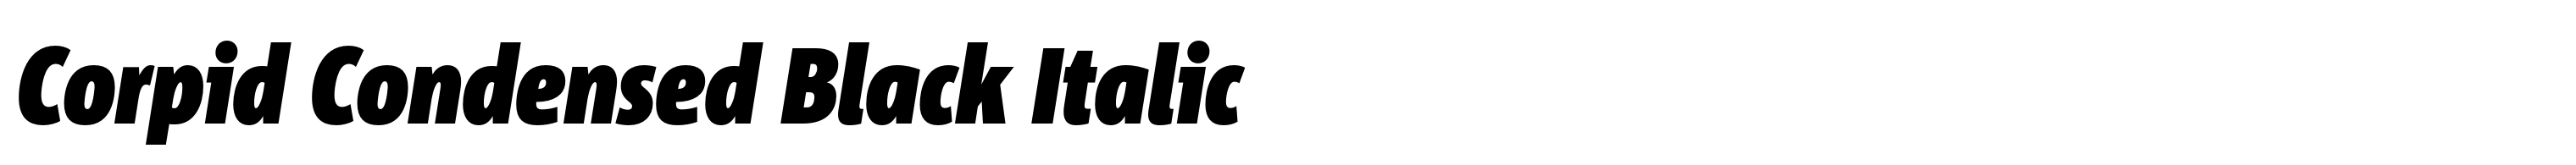 Corpid Condensed Black Italic